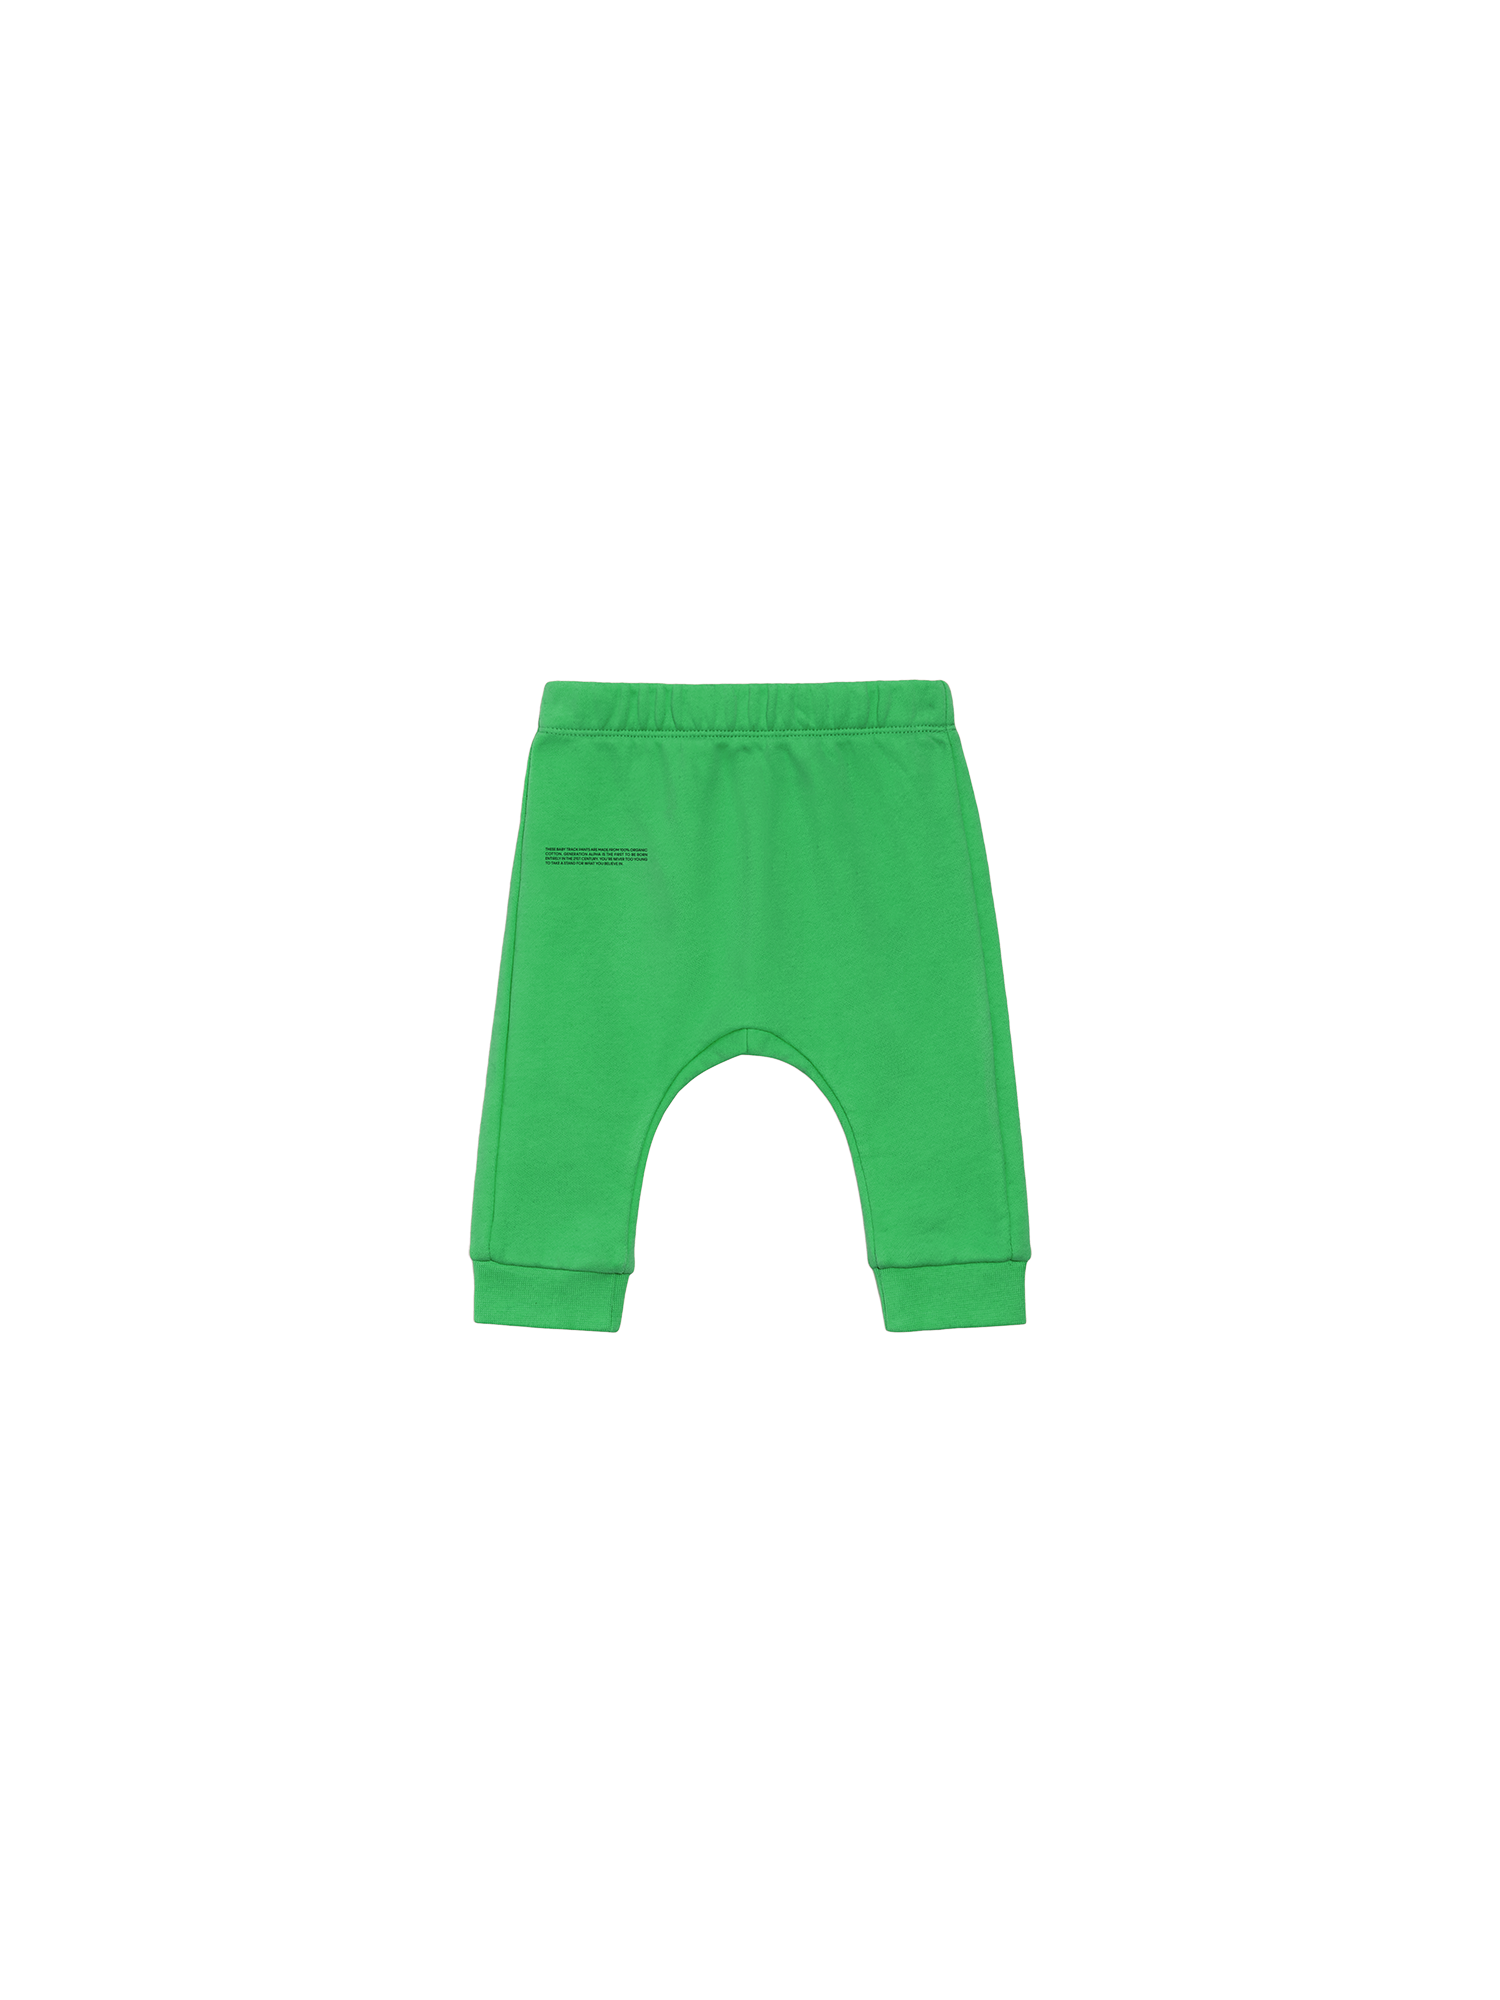 365 Baby Track Pants—jade green packshot-3